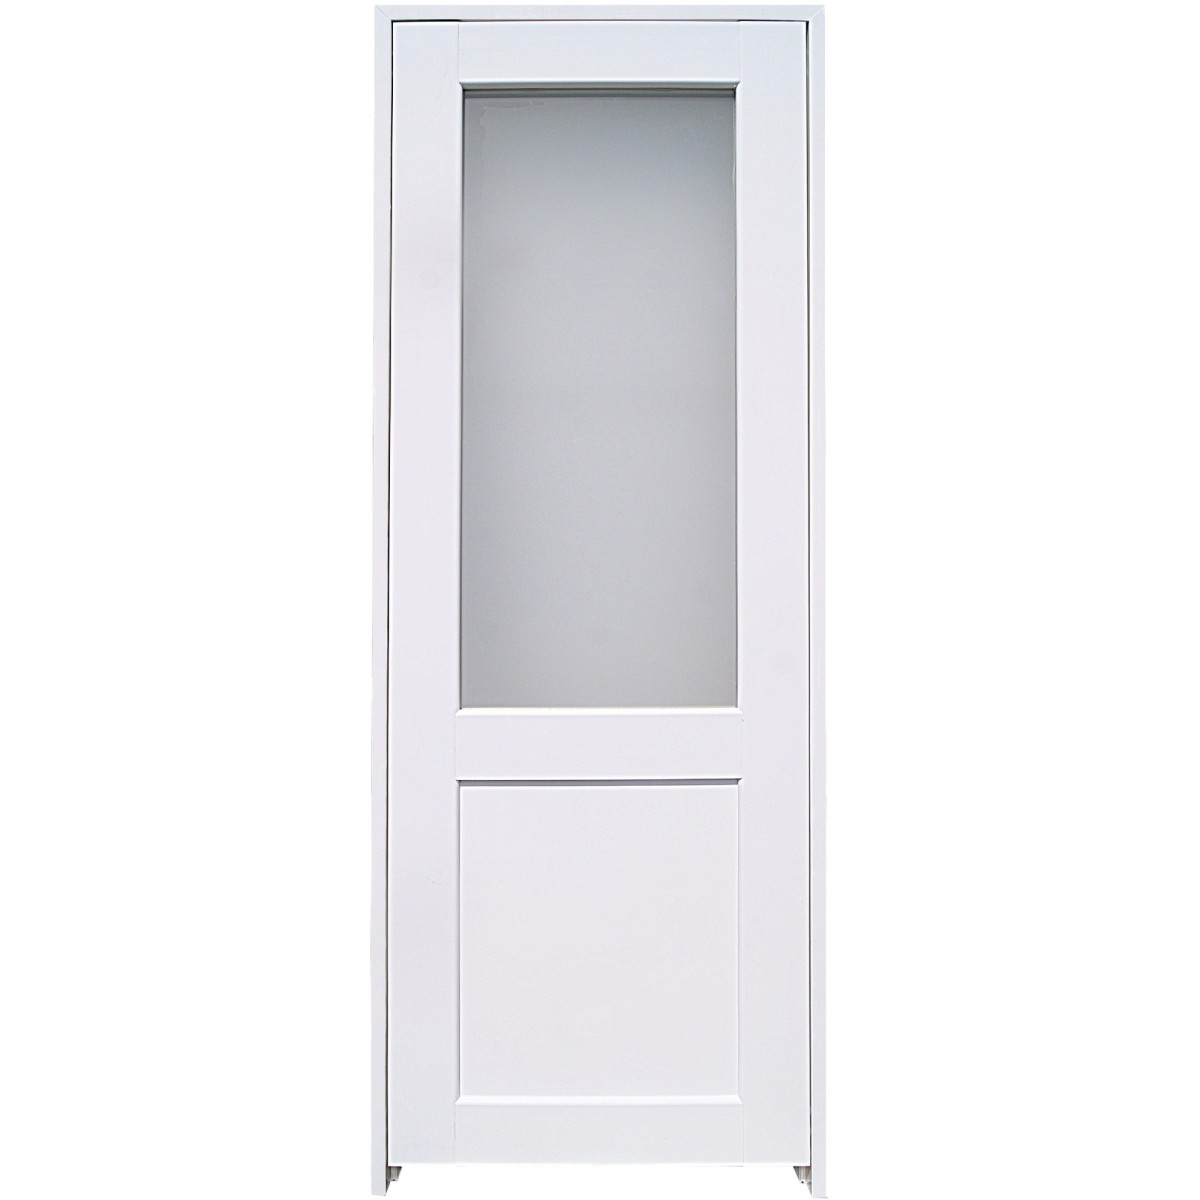 Блок дверной остеклённый с замком и петлями в комплекте Акваплюс 70x200 см ПВХ